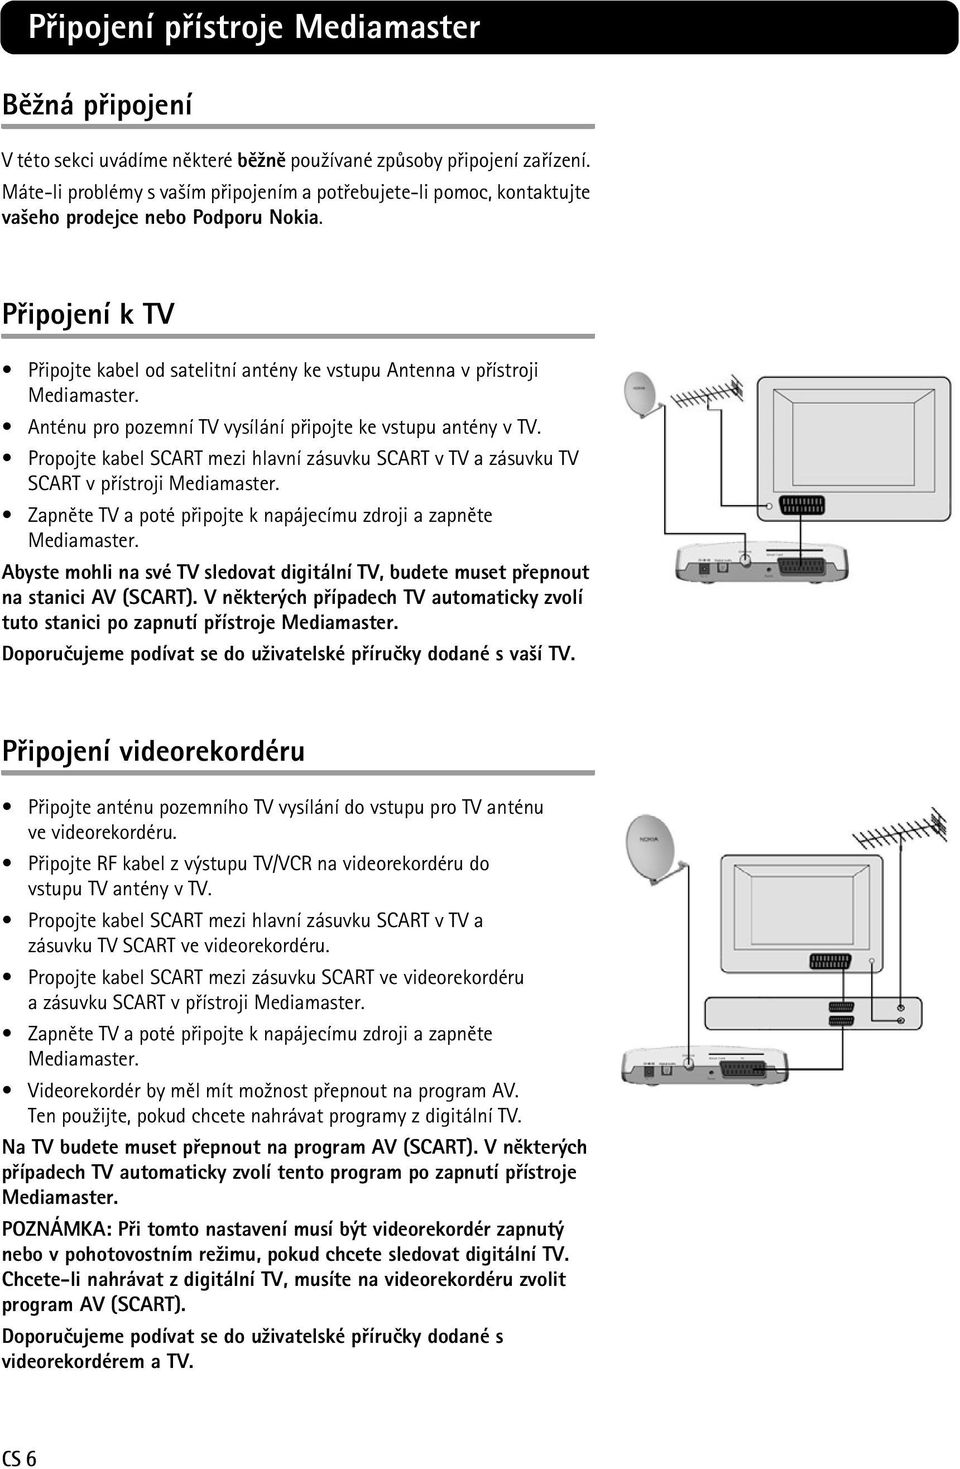 Anténu pro pozemní TV vysílání pøipojte ke vstupu antény v TV. Propojte kabel SCART mezi hlavní zásuvku SCART v TV a zásuvku TV SCART v pøístroji Mediamaster.